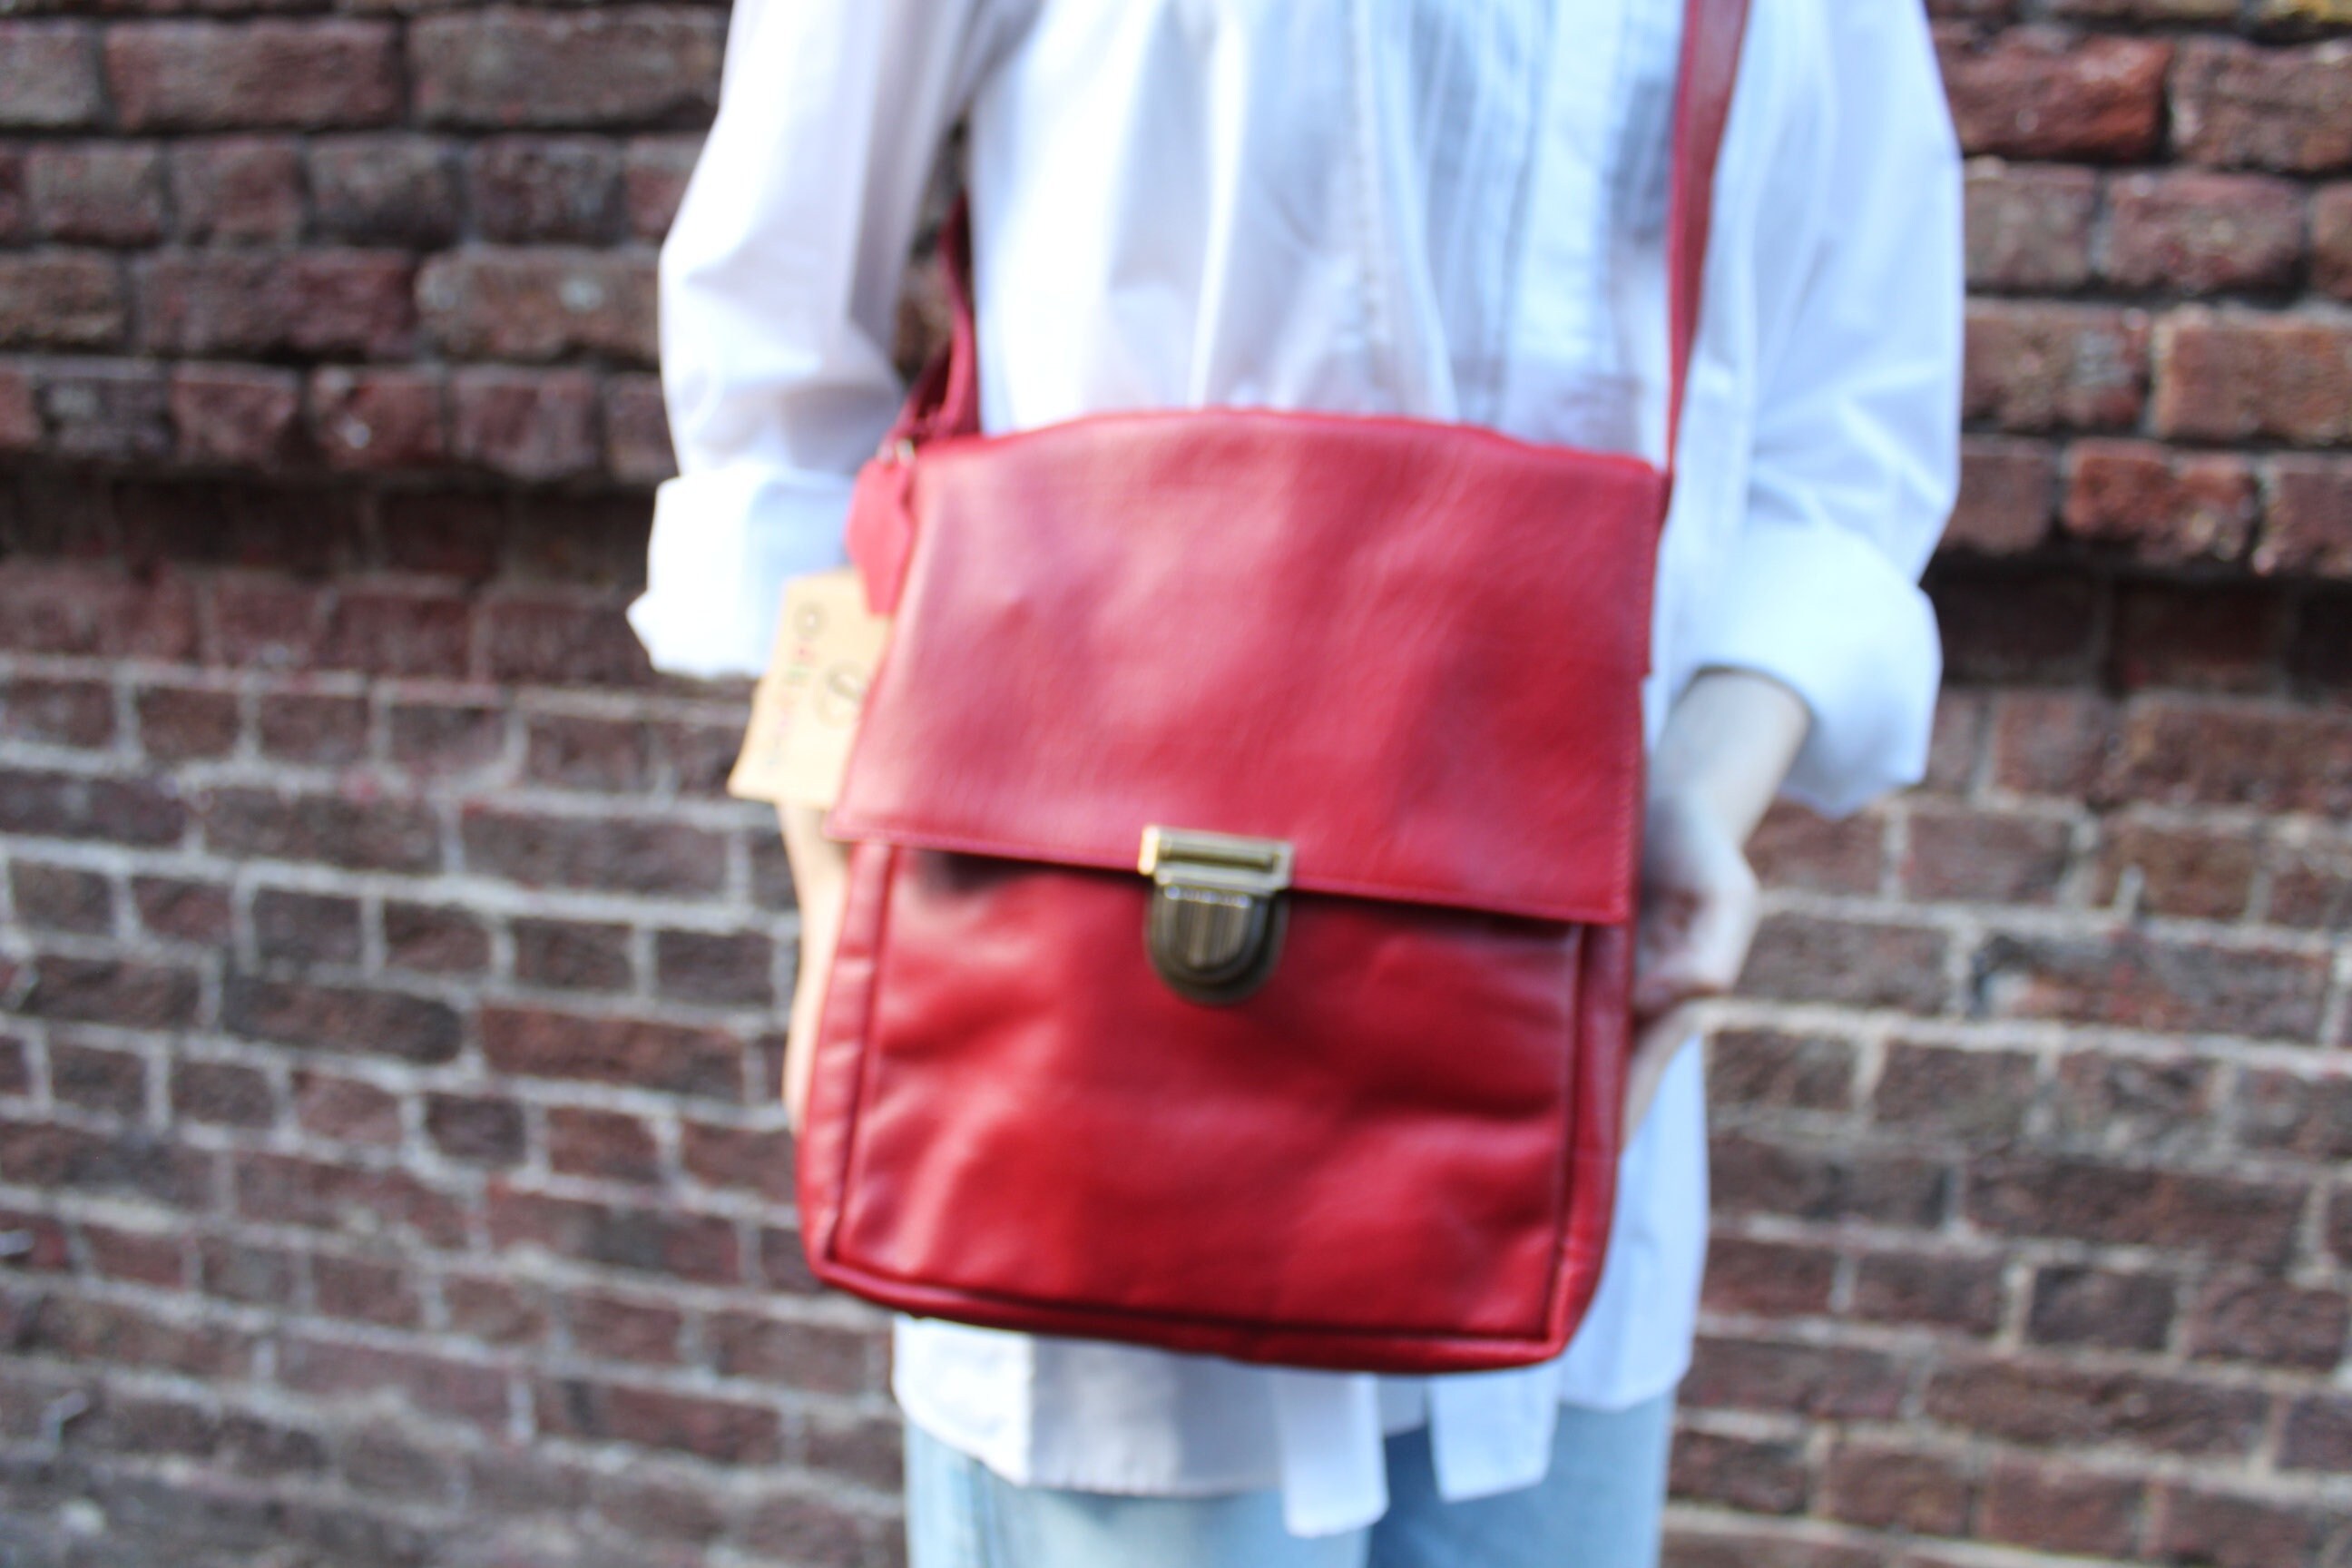 Vintage Brick Red Leather Large Messenger Bag Crossbody 